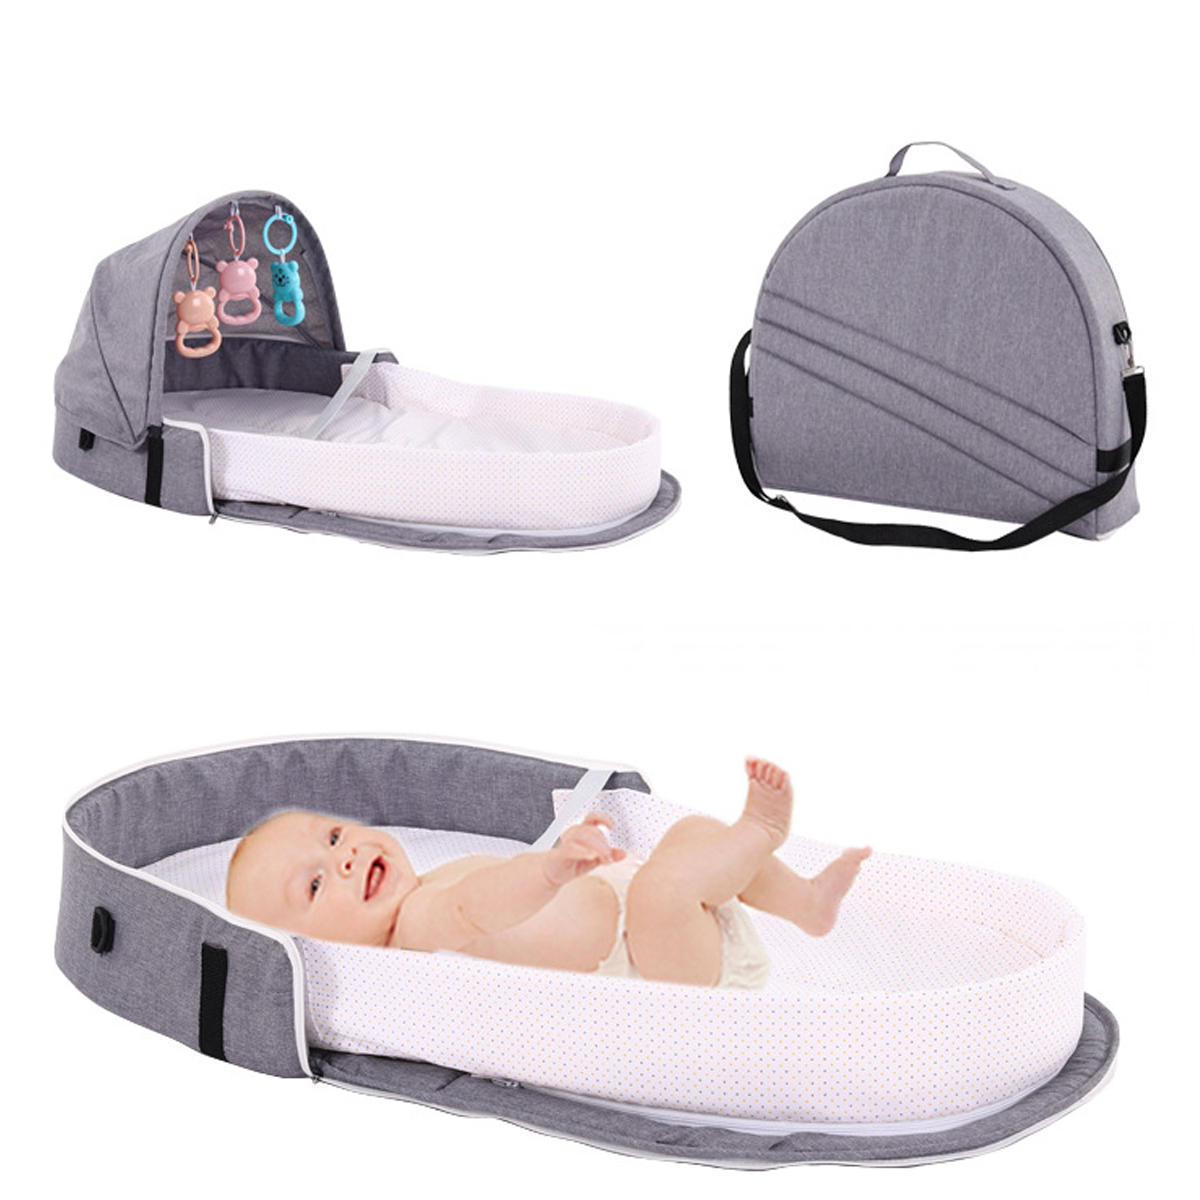 Αναδιπλούμενο κρεβάτι για μωρά IPree® με κουνουπιέρα, φορητή σκηνή κρεβατιού για ταξίδια